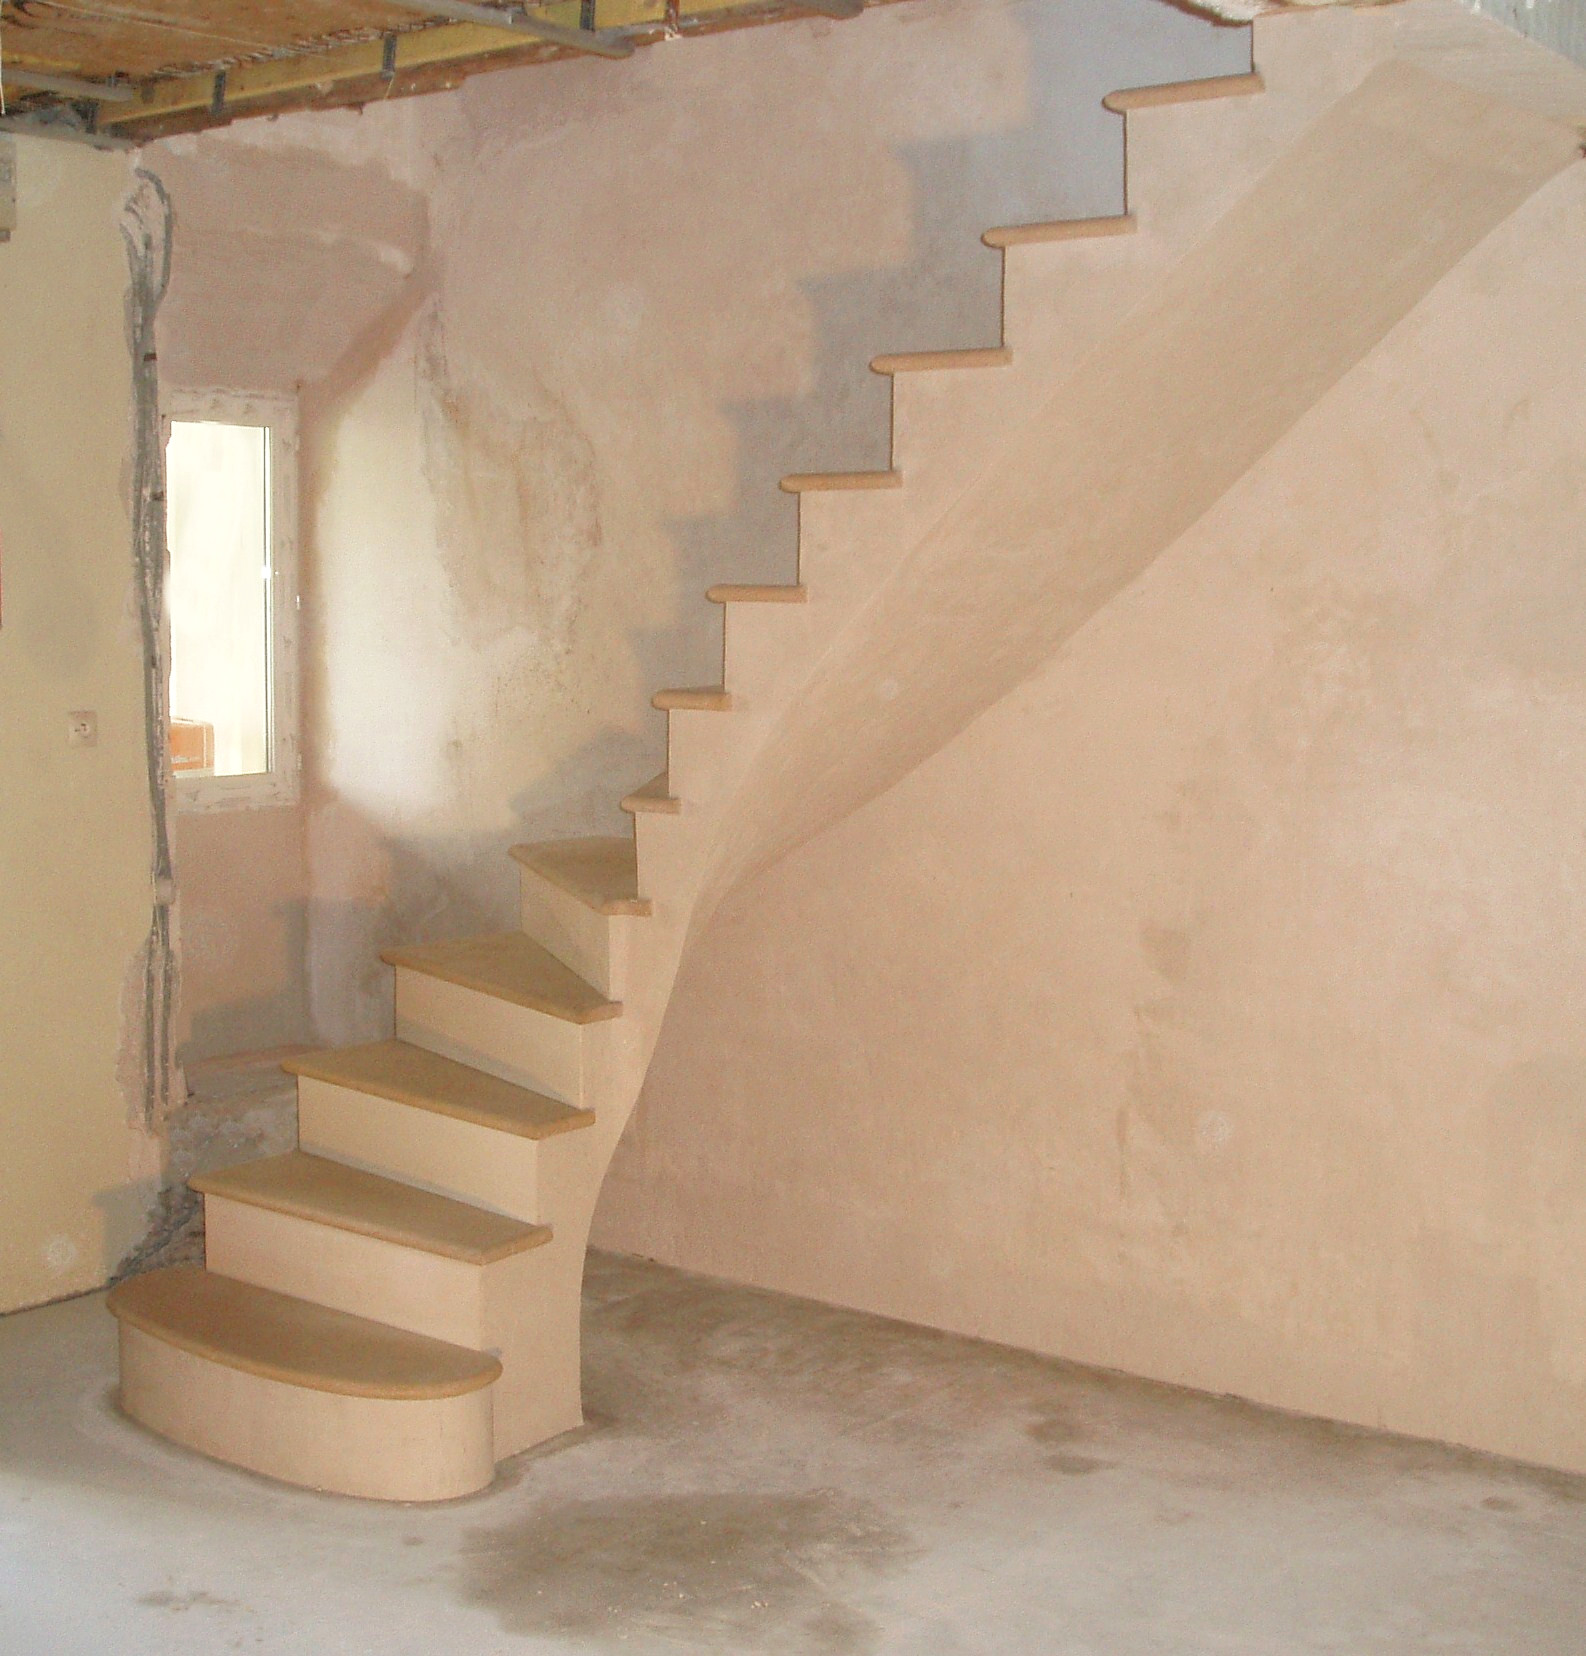 Escaliers en pierre sur mesure Gers - Maçonnerie traditionnelle et taille de pierre Gers. Histoire de Pierres